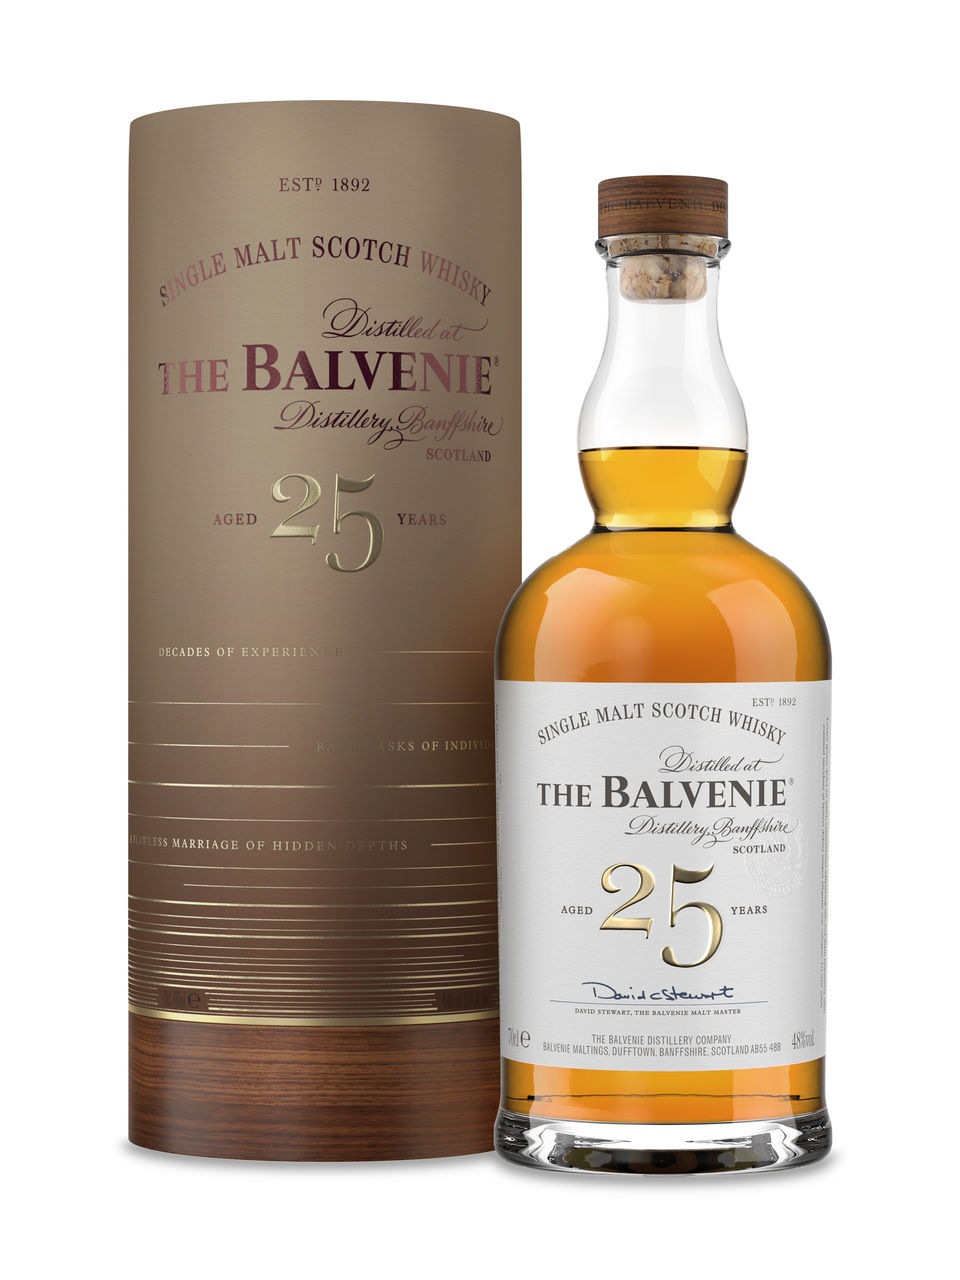 The Balvenie 25 Year Old